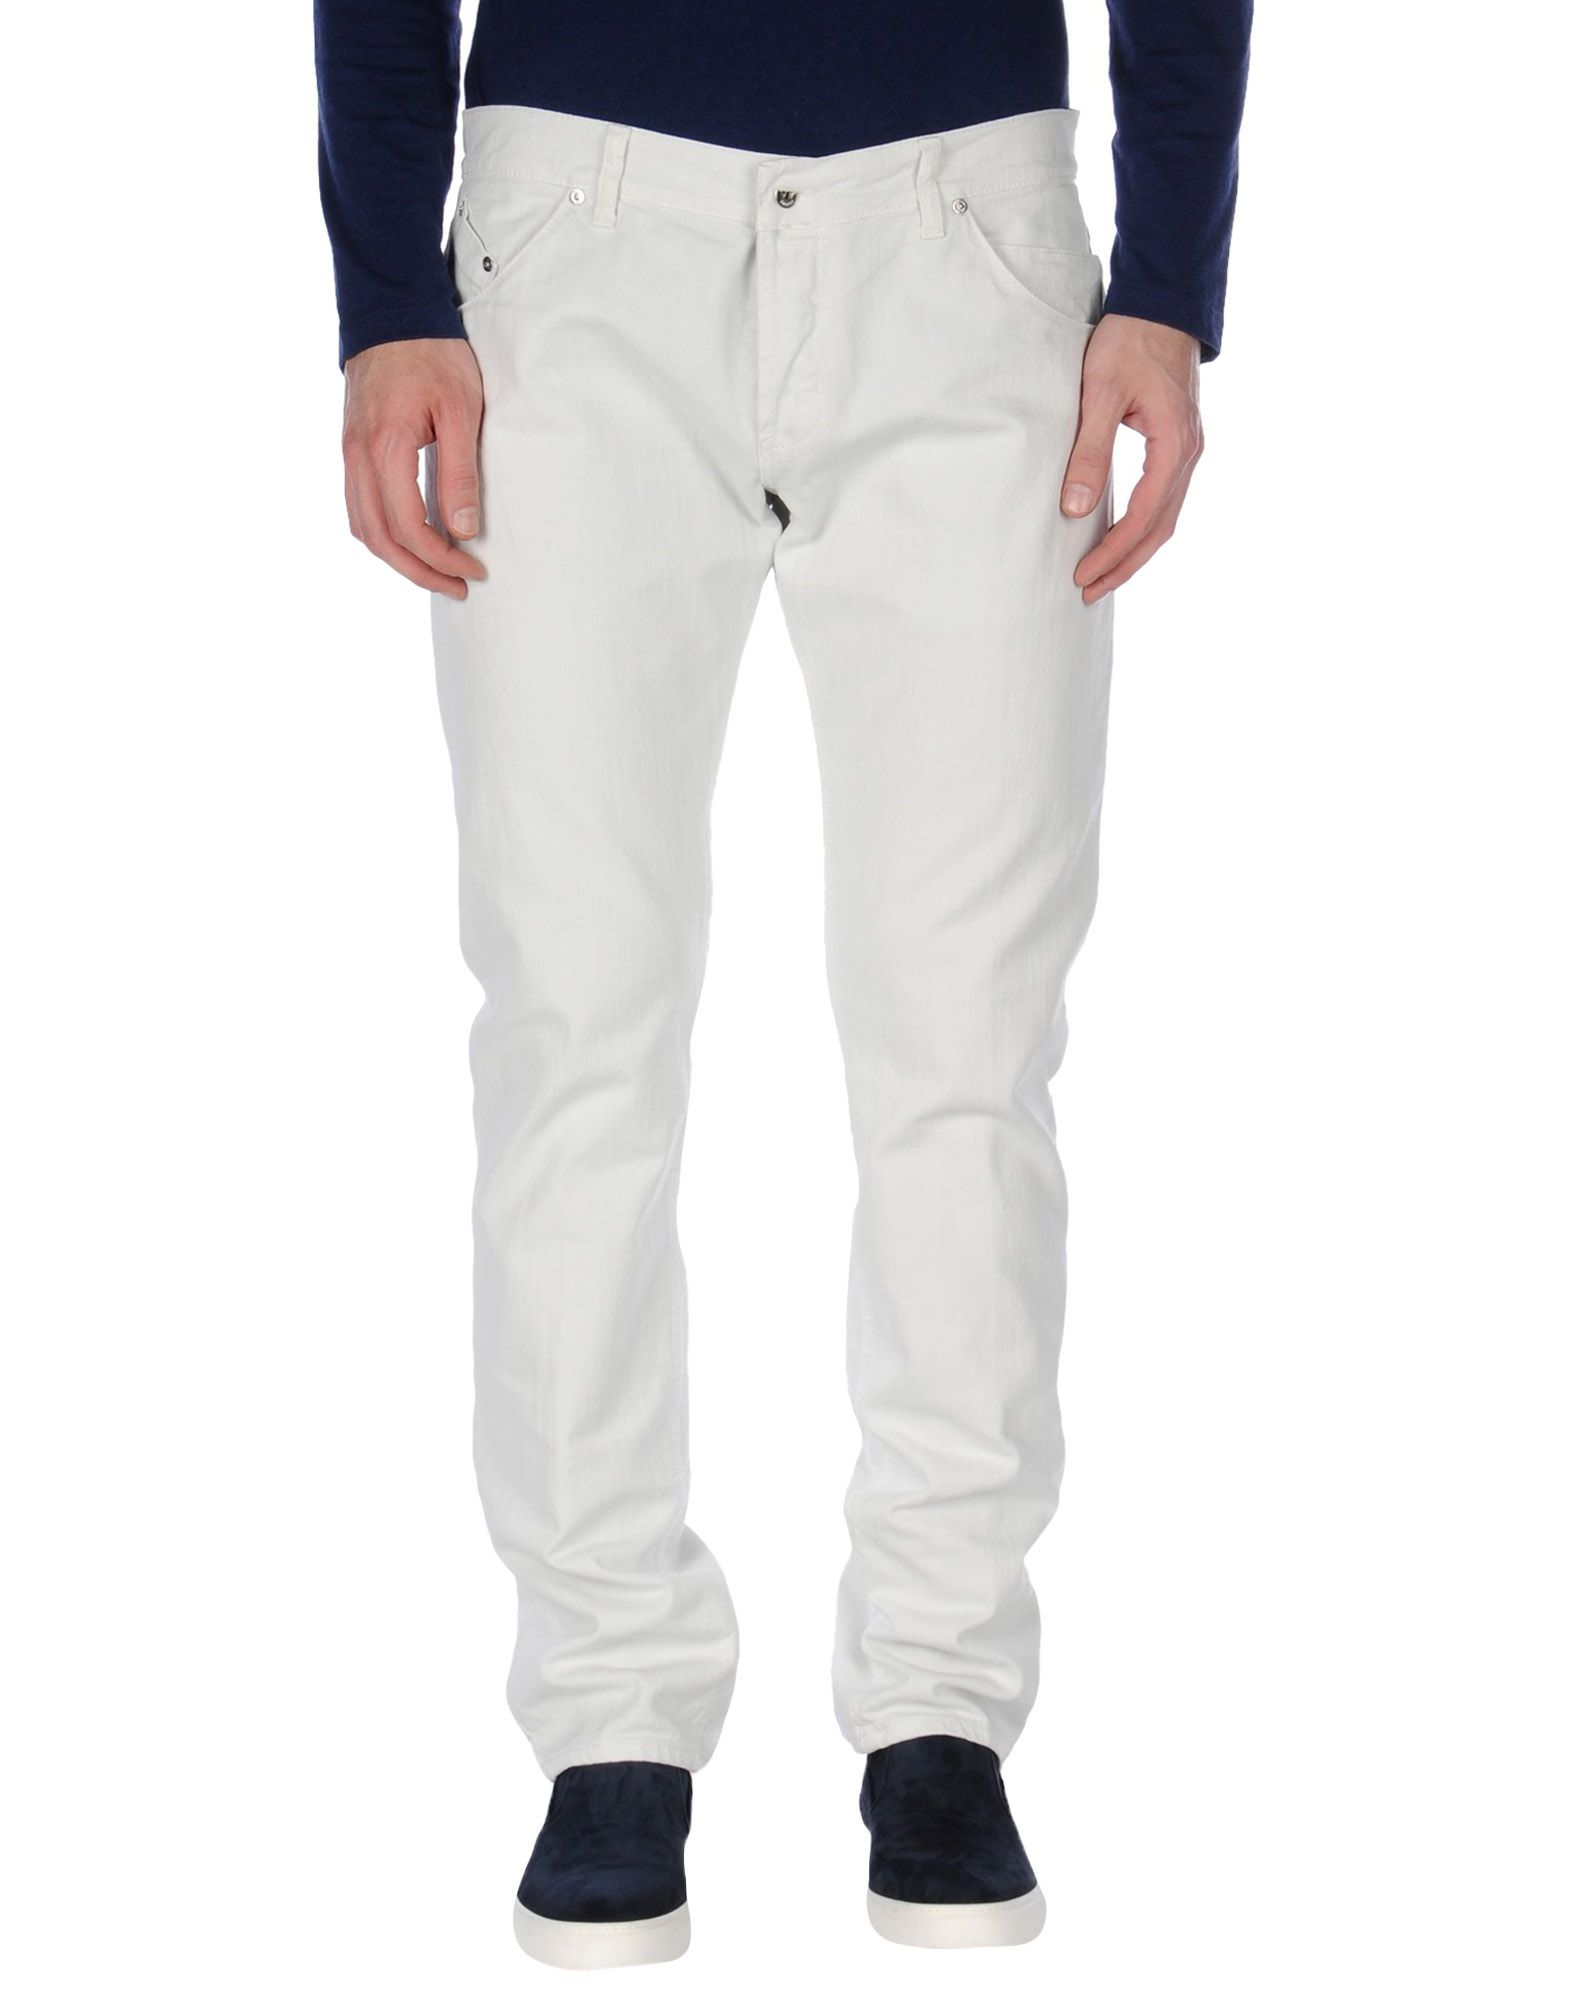 Lyst - Dondup Denim Pants in White for Men